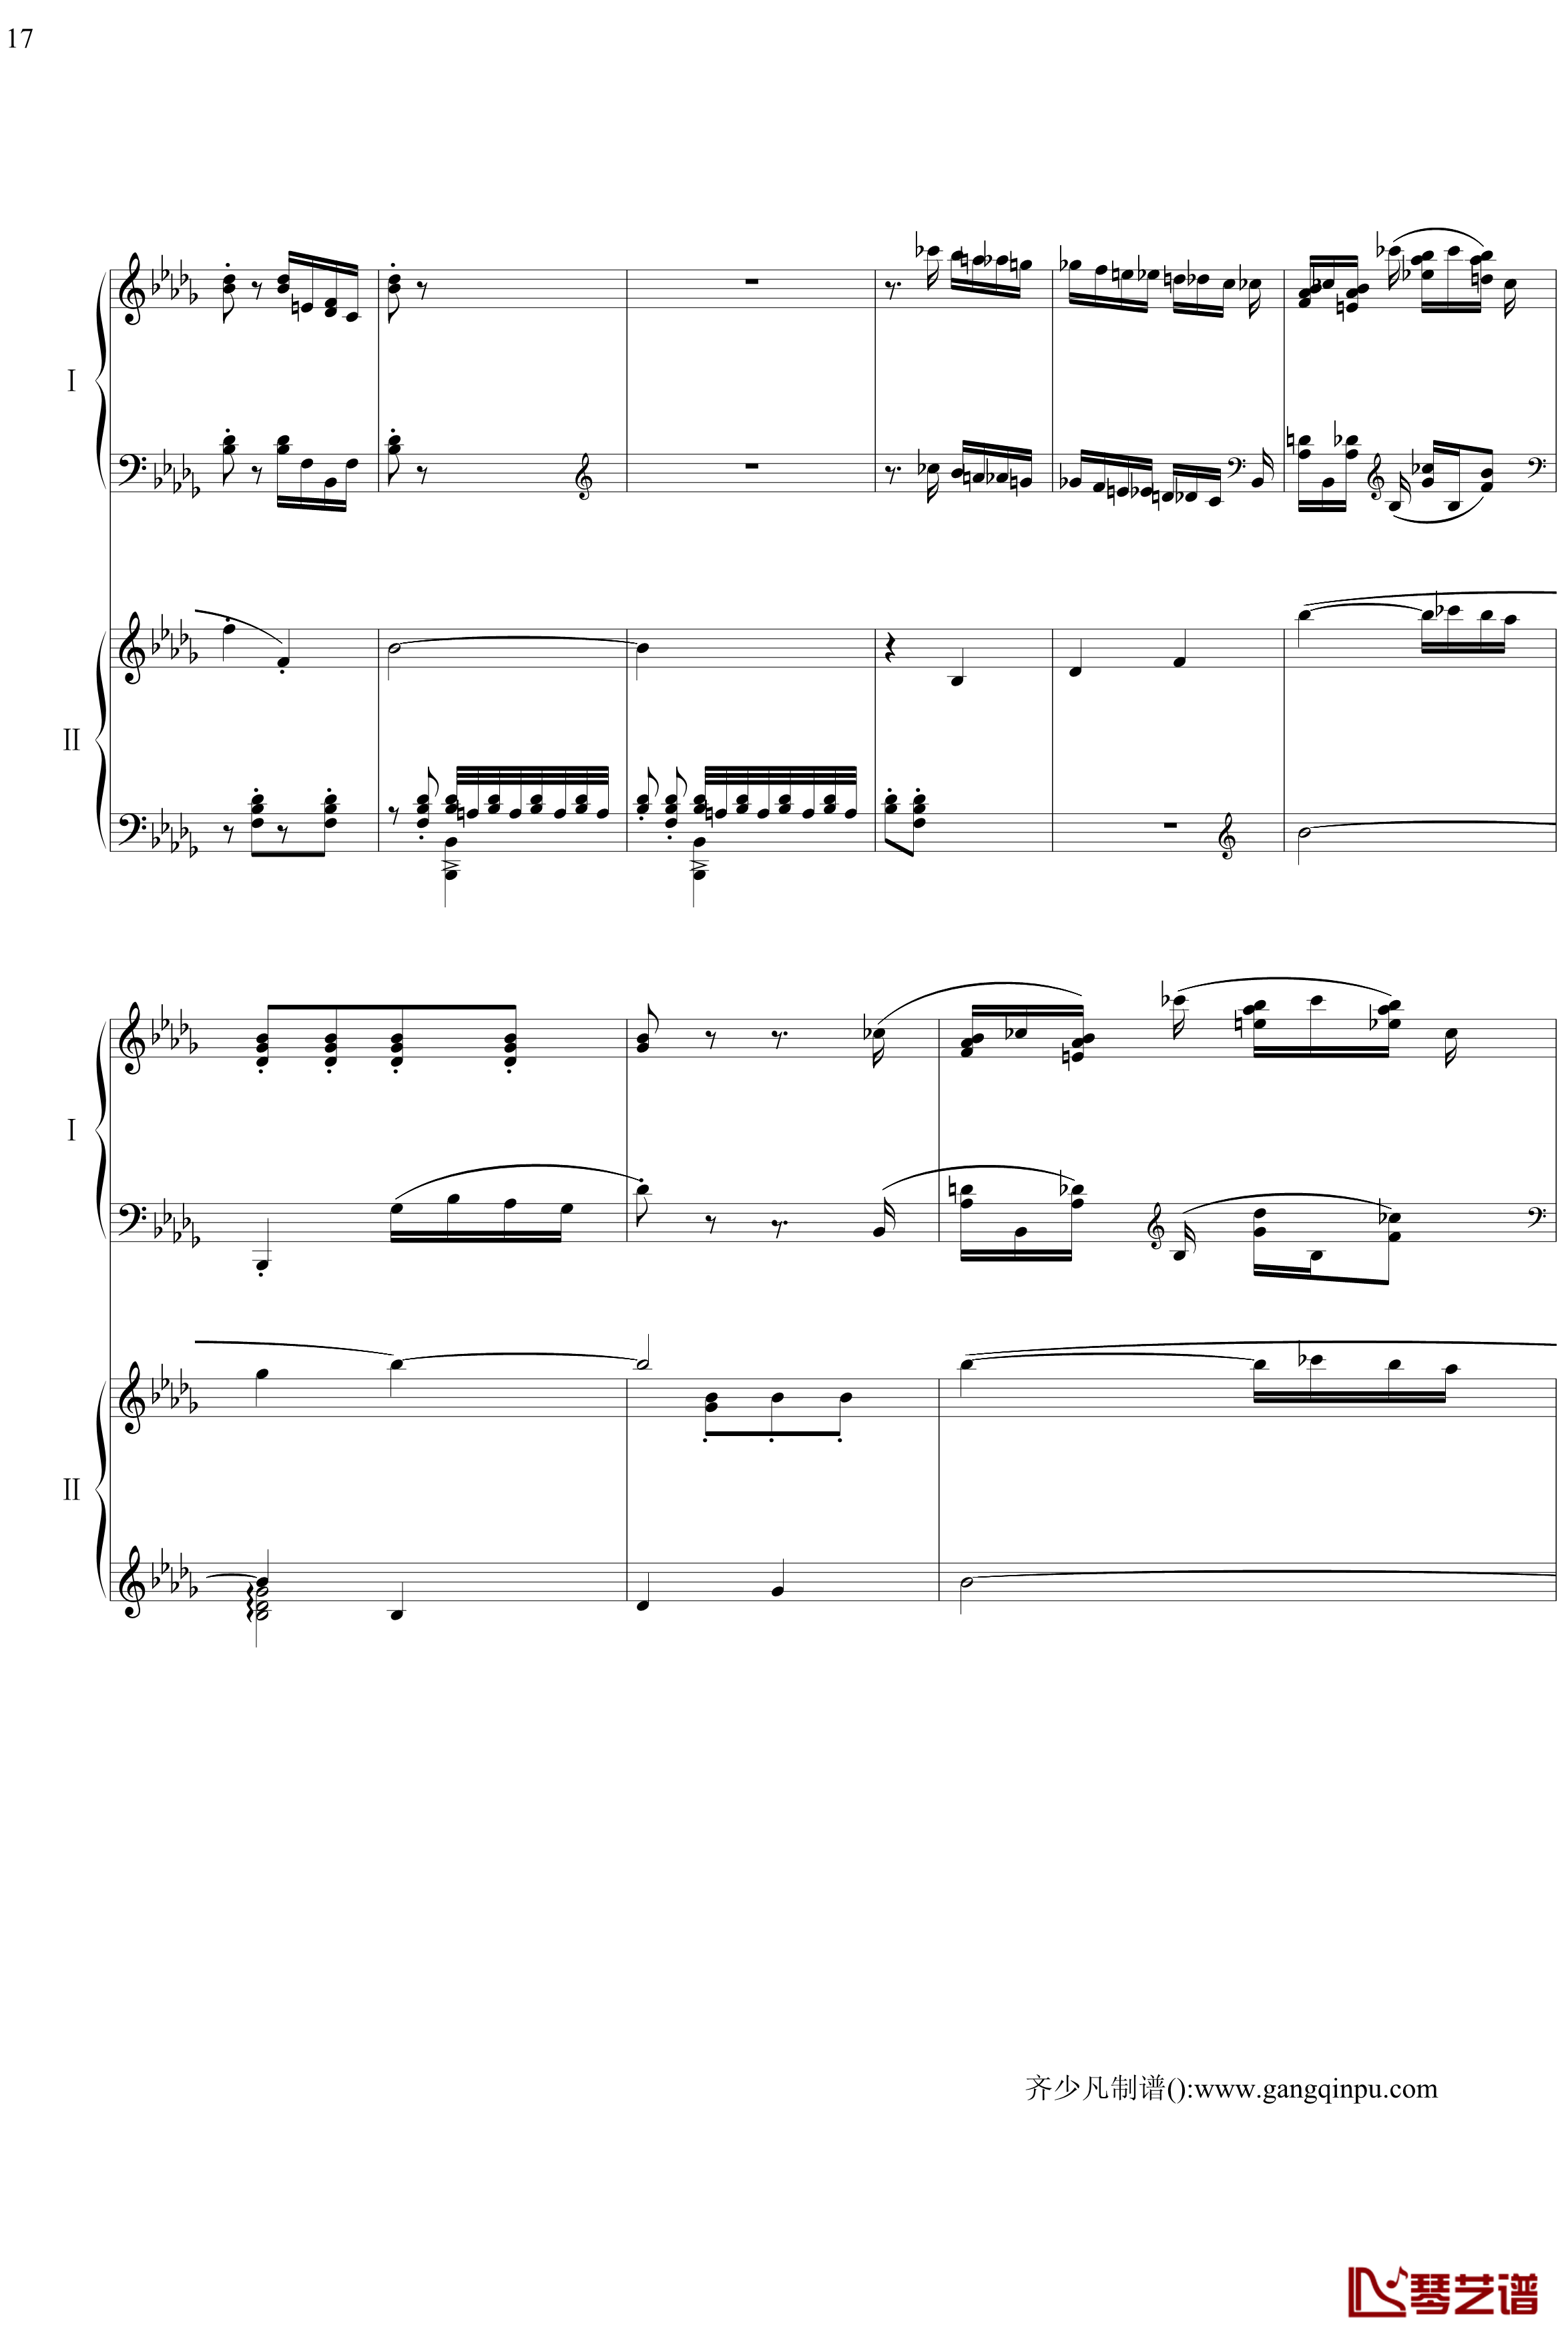 帕格尼尼主题狂想曲钢琴谱-11~18变奏-拉赫马尼若夫17